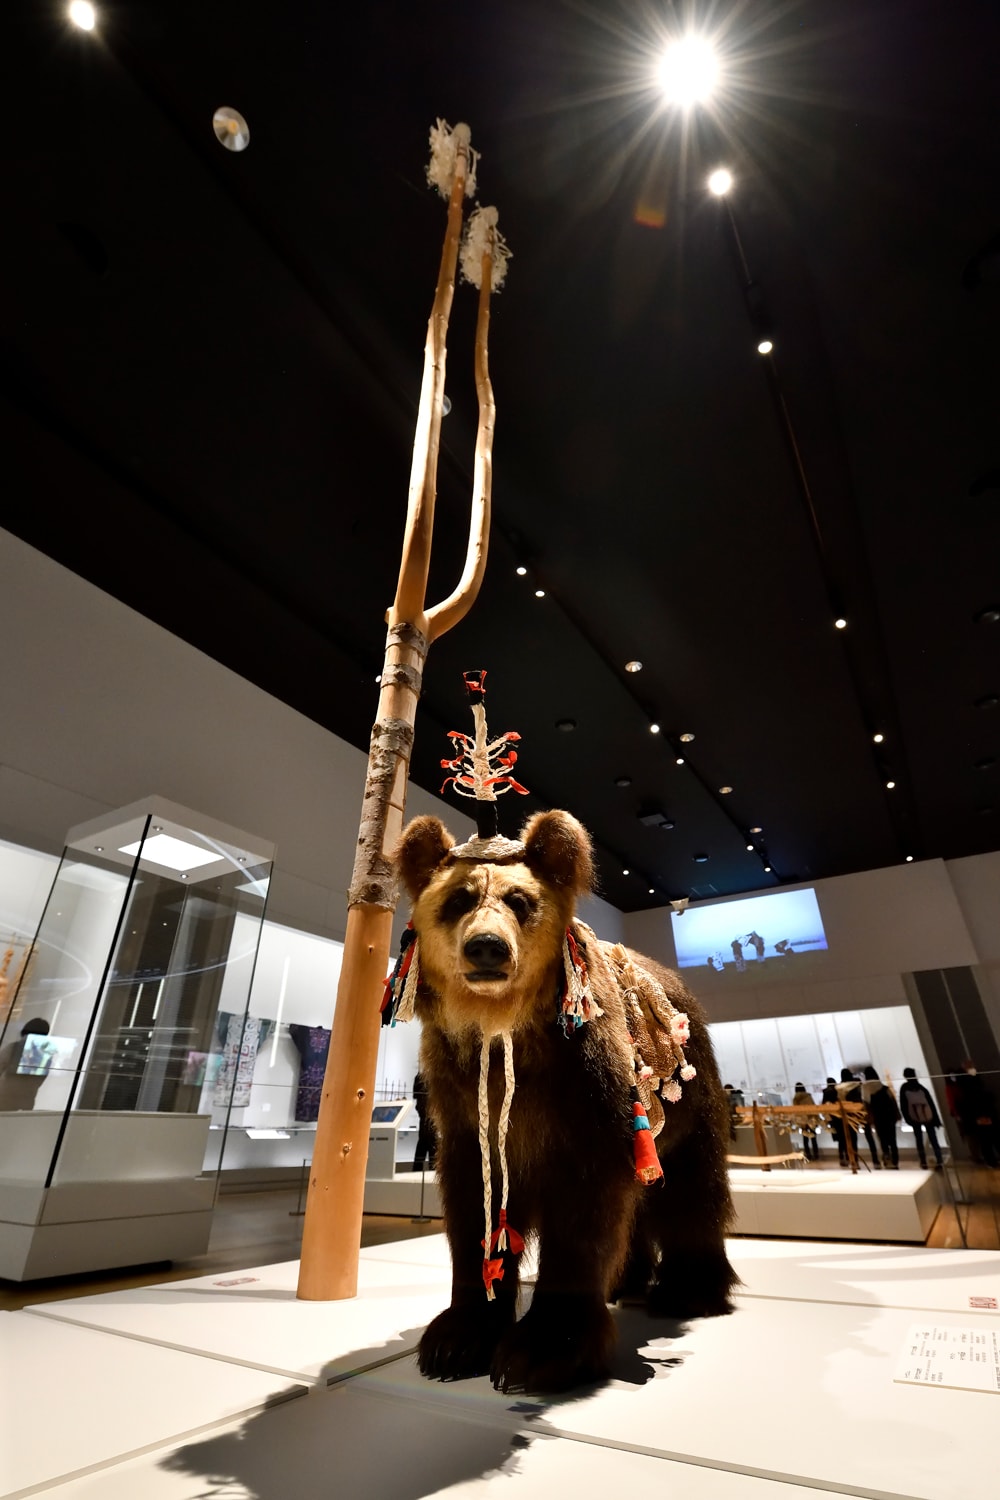 アイヌの精神世界を知る展示では、霊送りの儀式で用いられた「トゥクシシ」と熊つなぎ杭と熊飾りを復元。